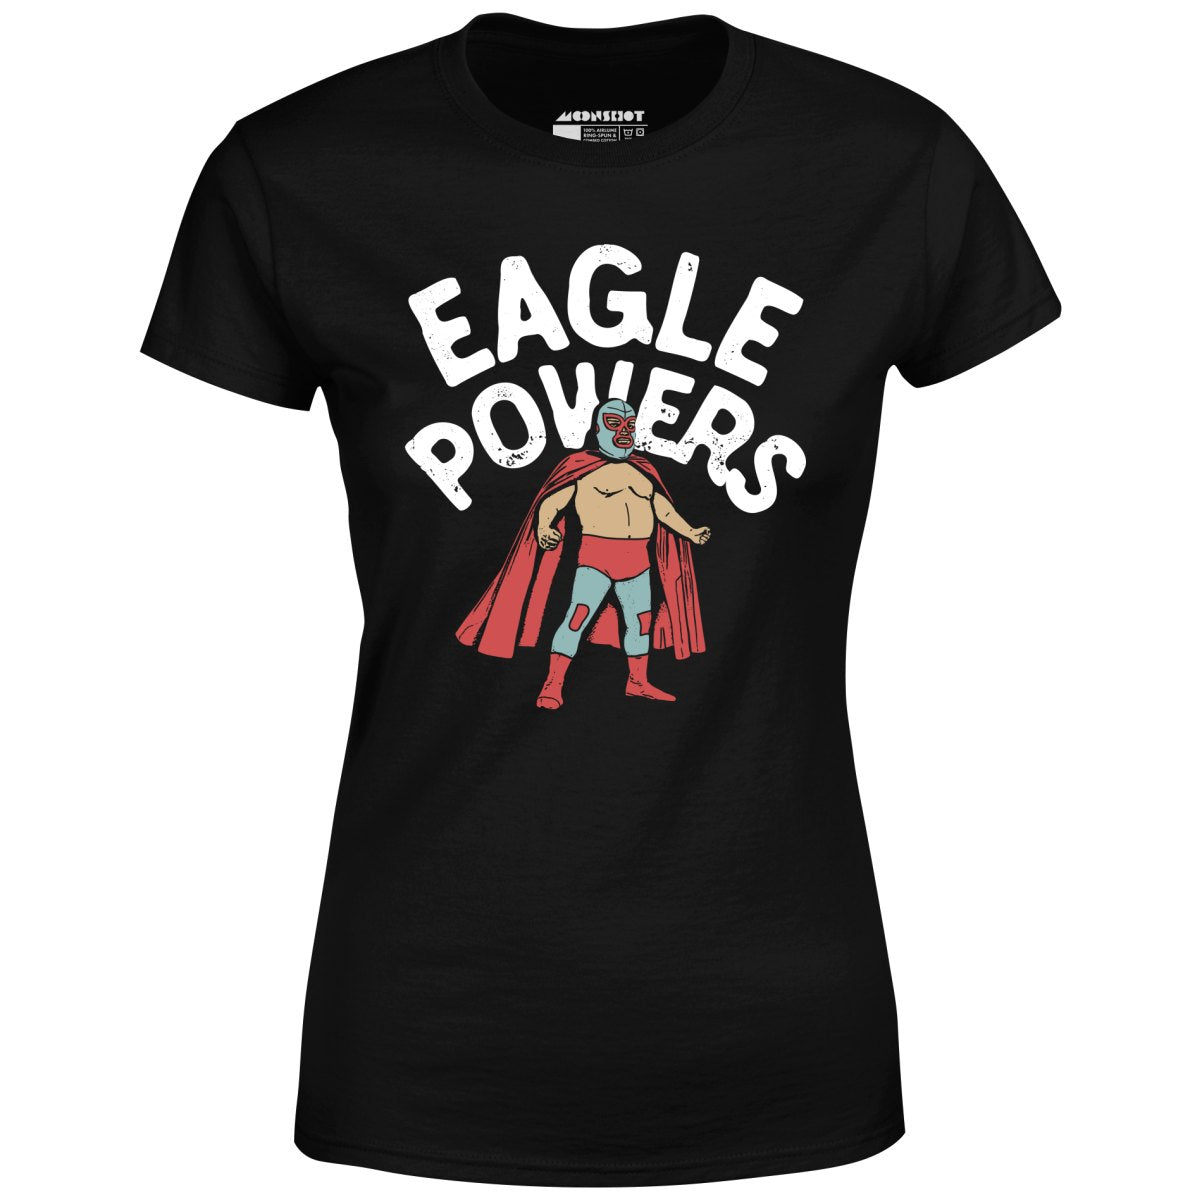 Eagle Powers - Women's T-Shirt